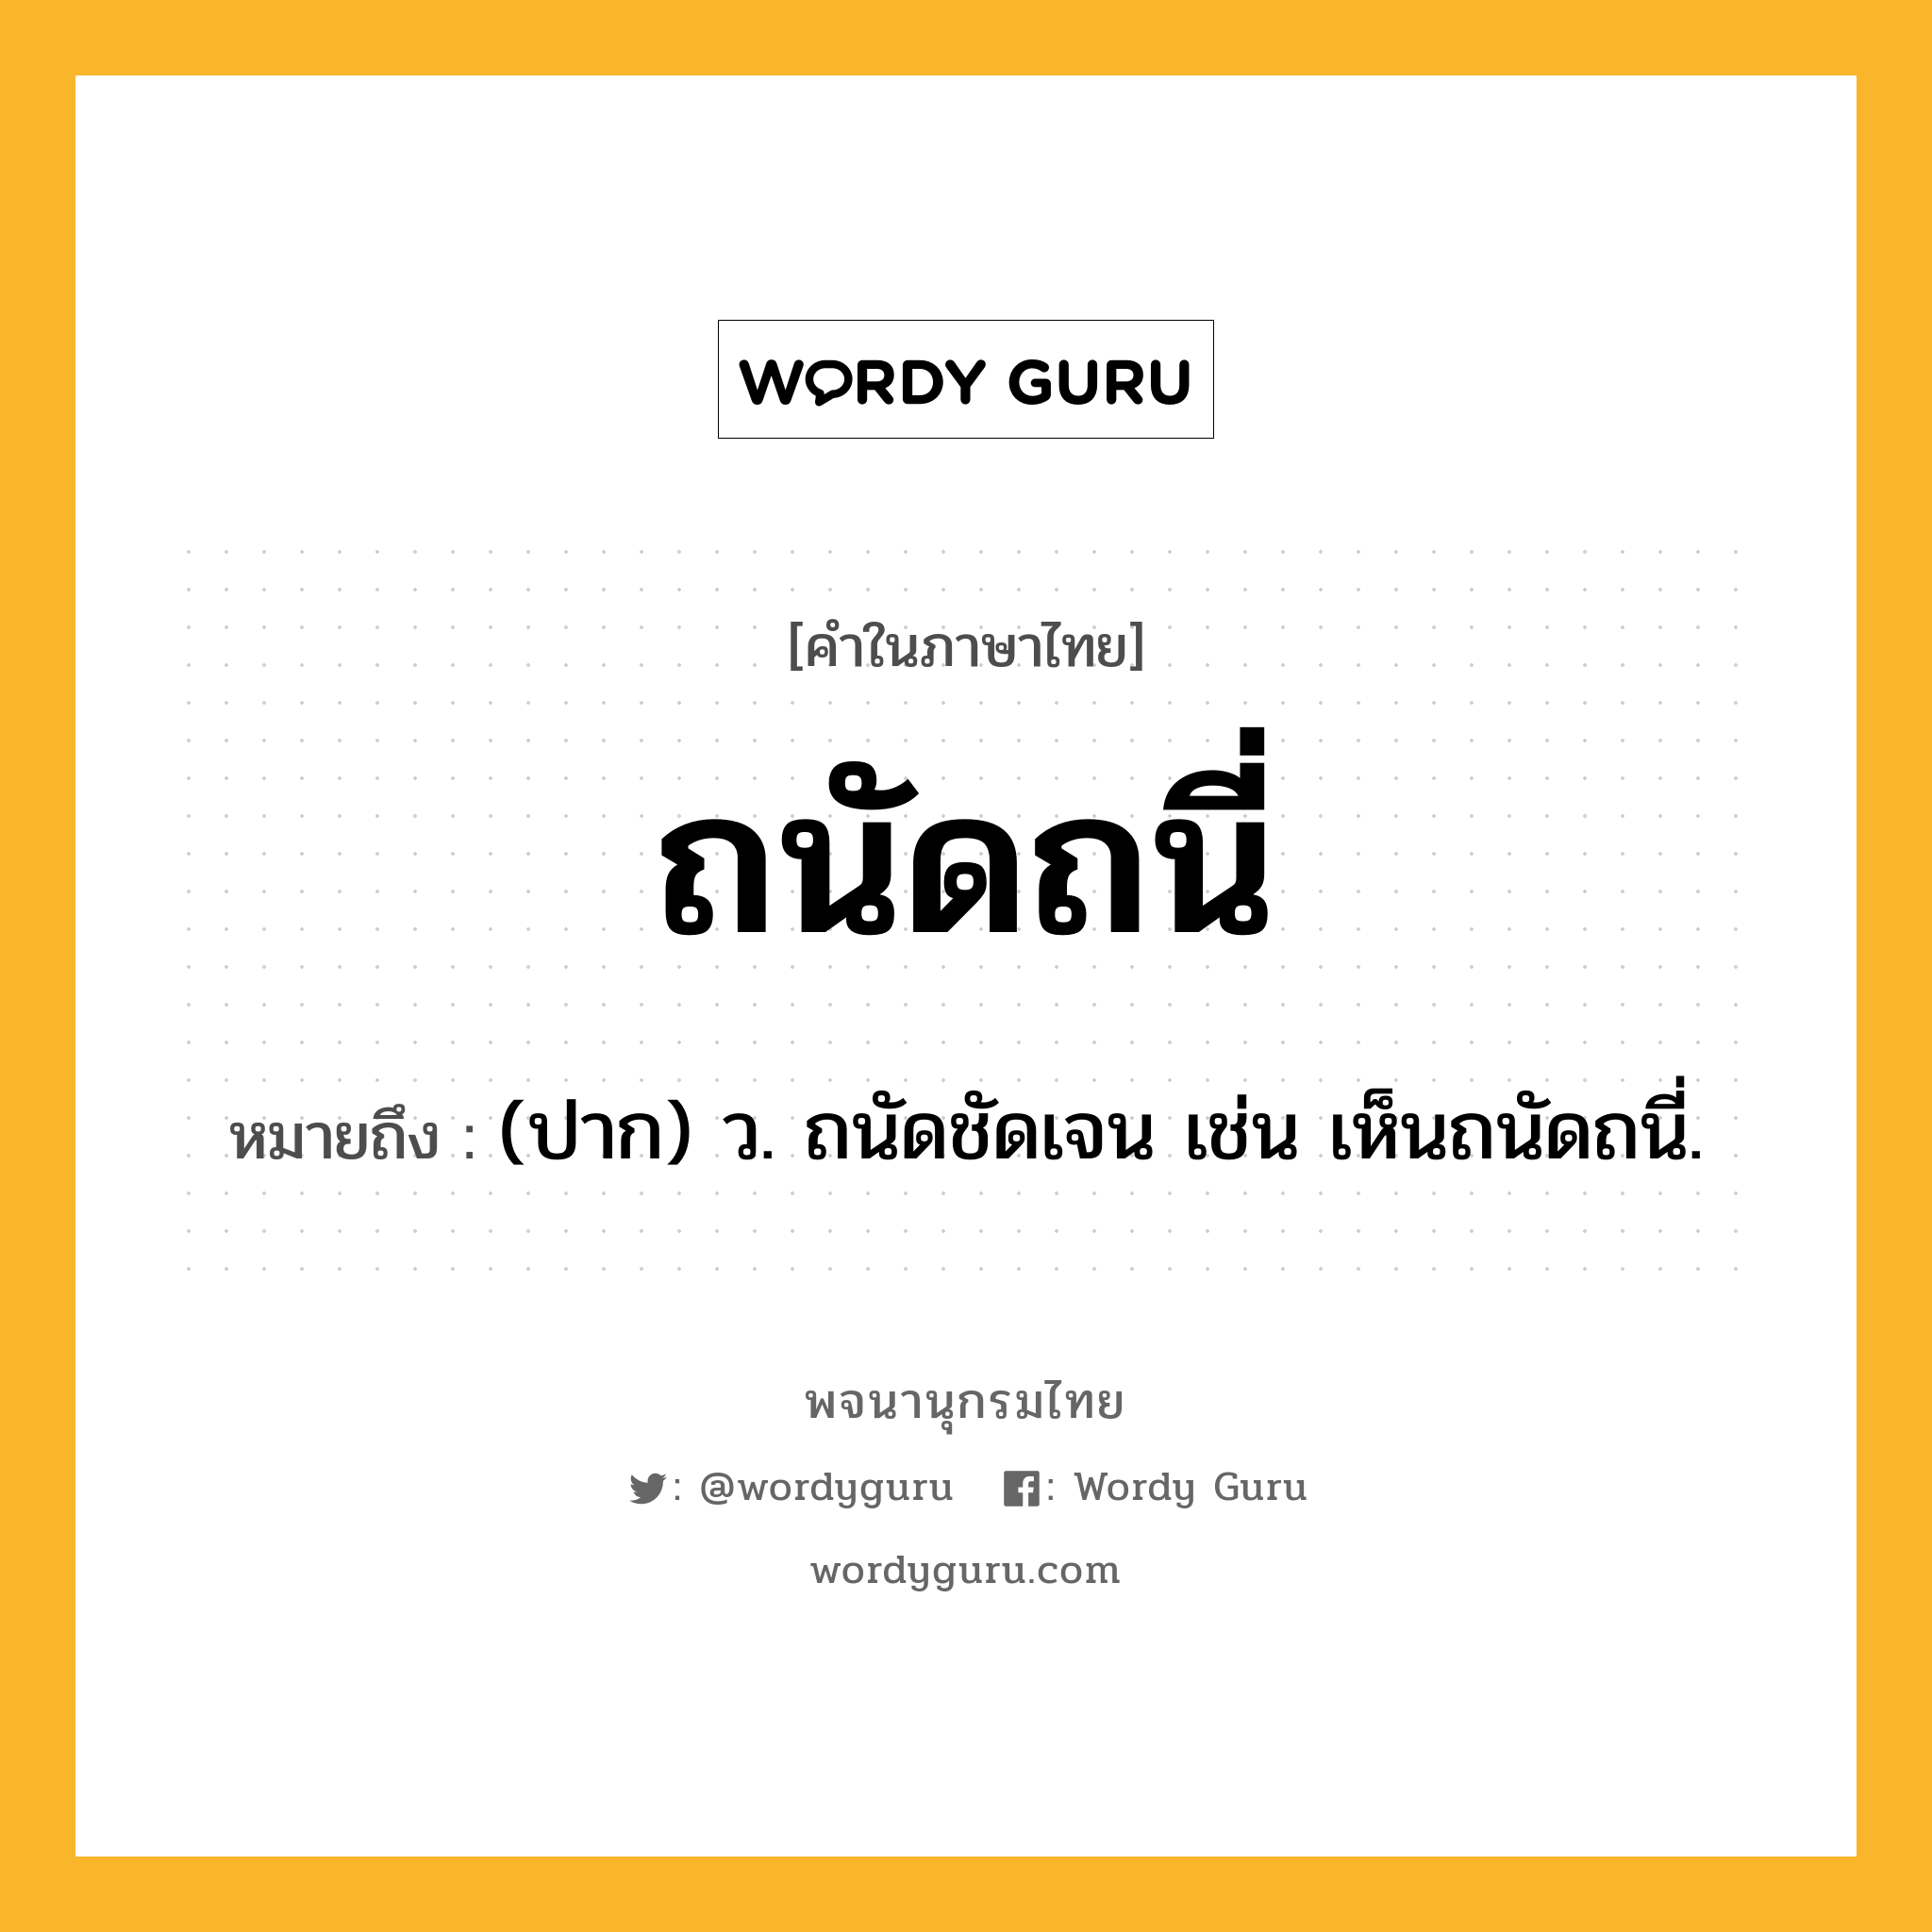 ถนัดถนี่ หมายถึงอะไร?, คำในภาษาไทย ถนัดถนี่ หมายถึง (ปาก) ว. ถนัดชัดเจน เช่น เห็นถนัดถนี่.